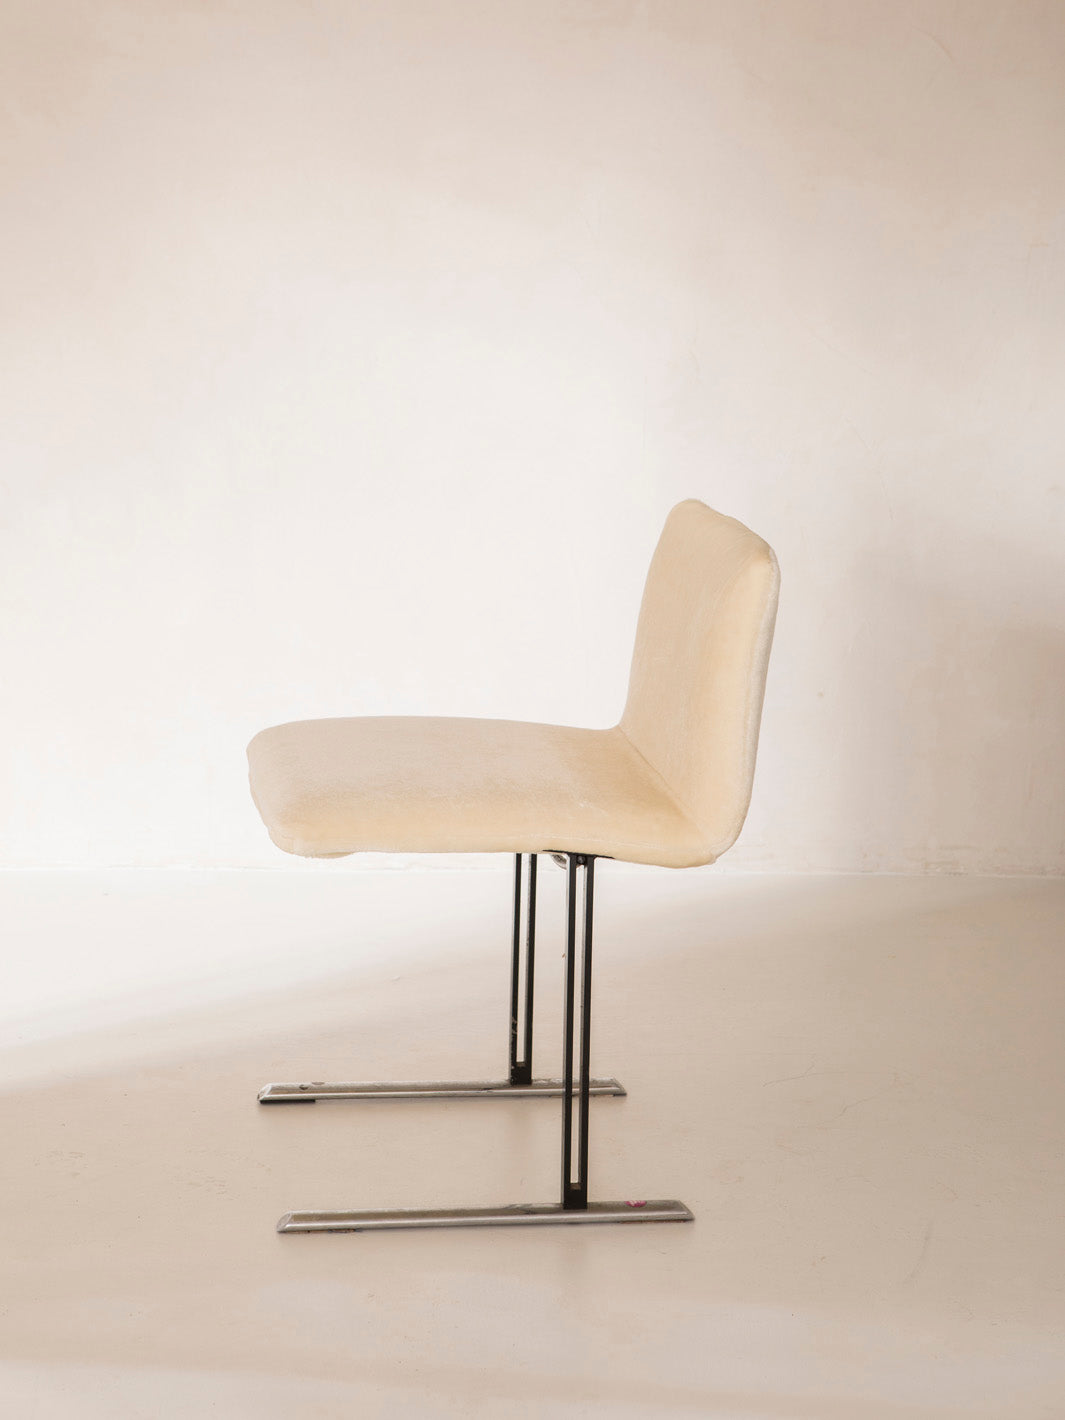 Saporetti chaise conçue par Offredi dating back to the 70s